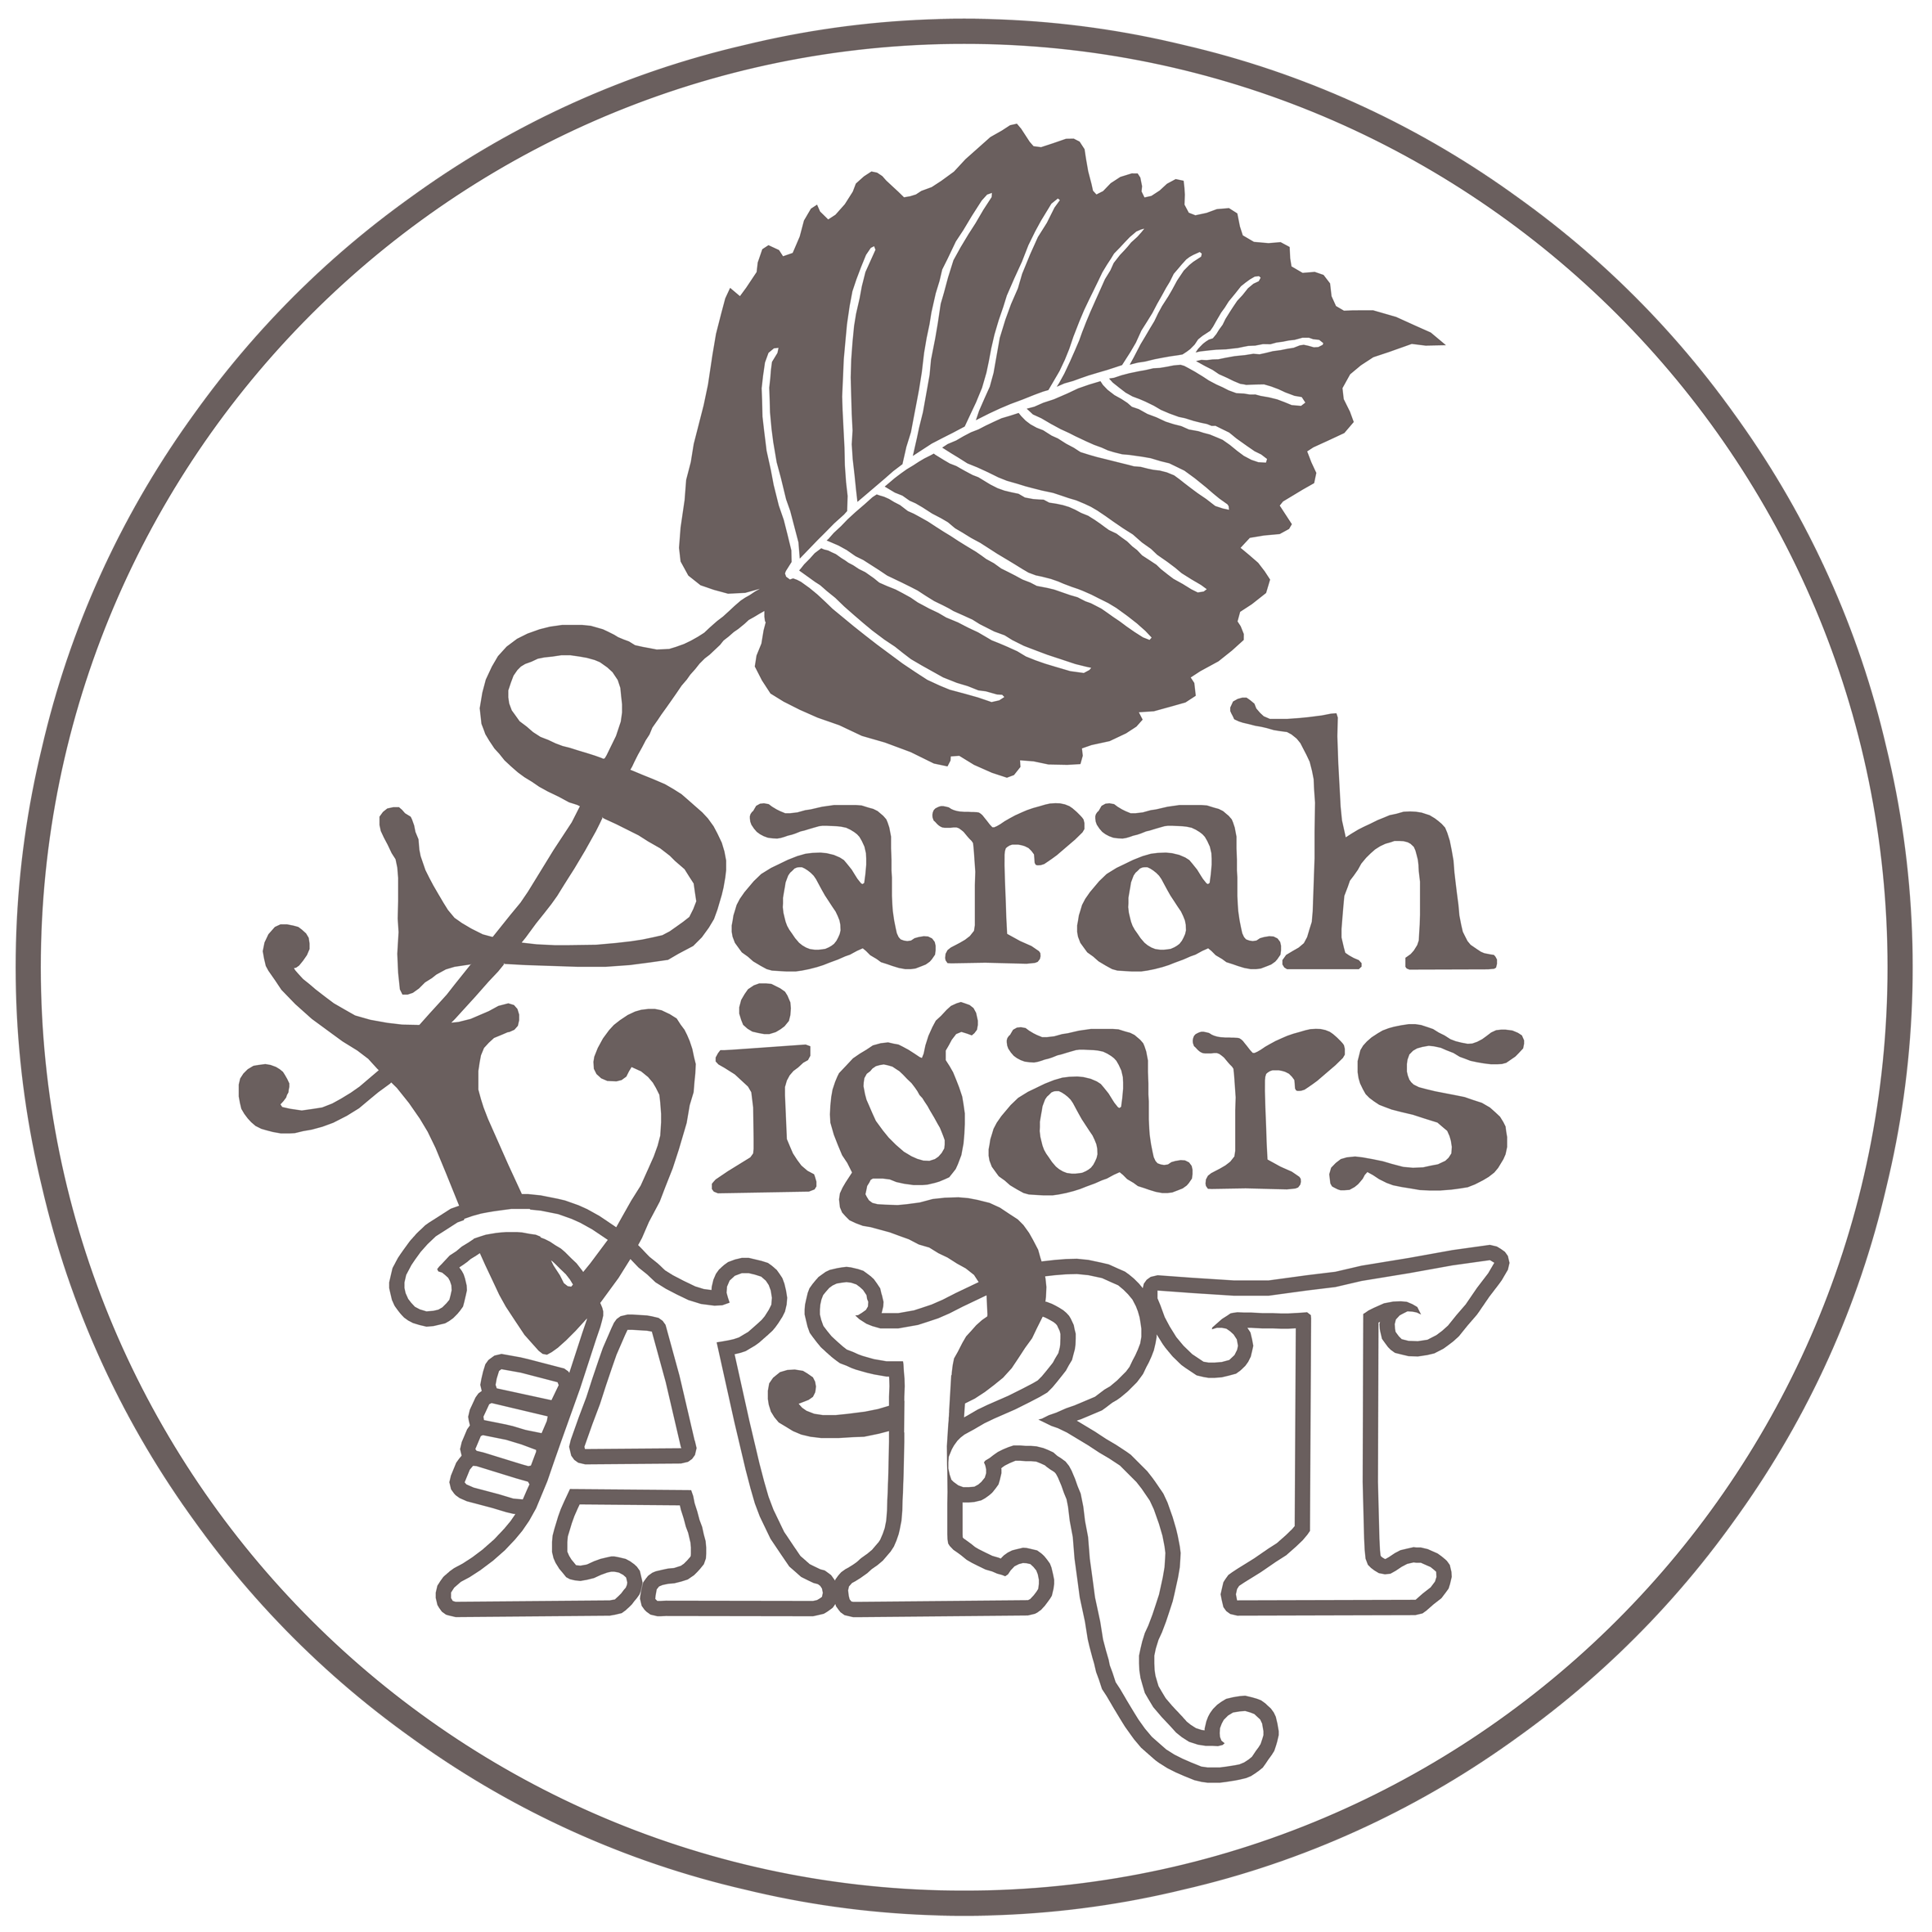 Sarah Vigars Art